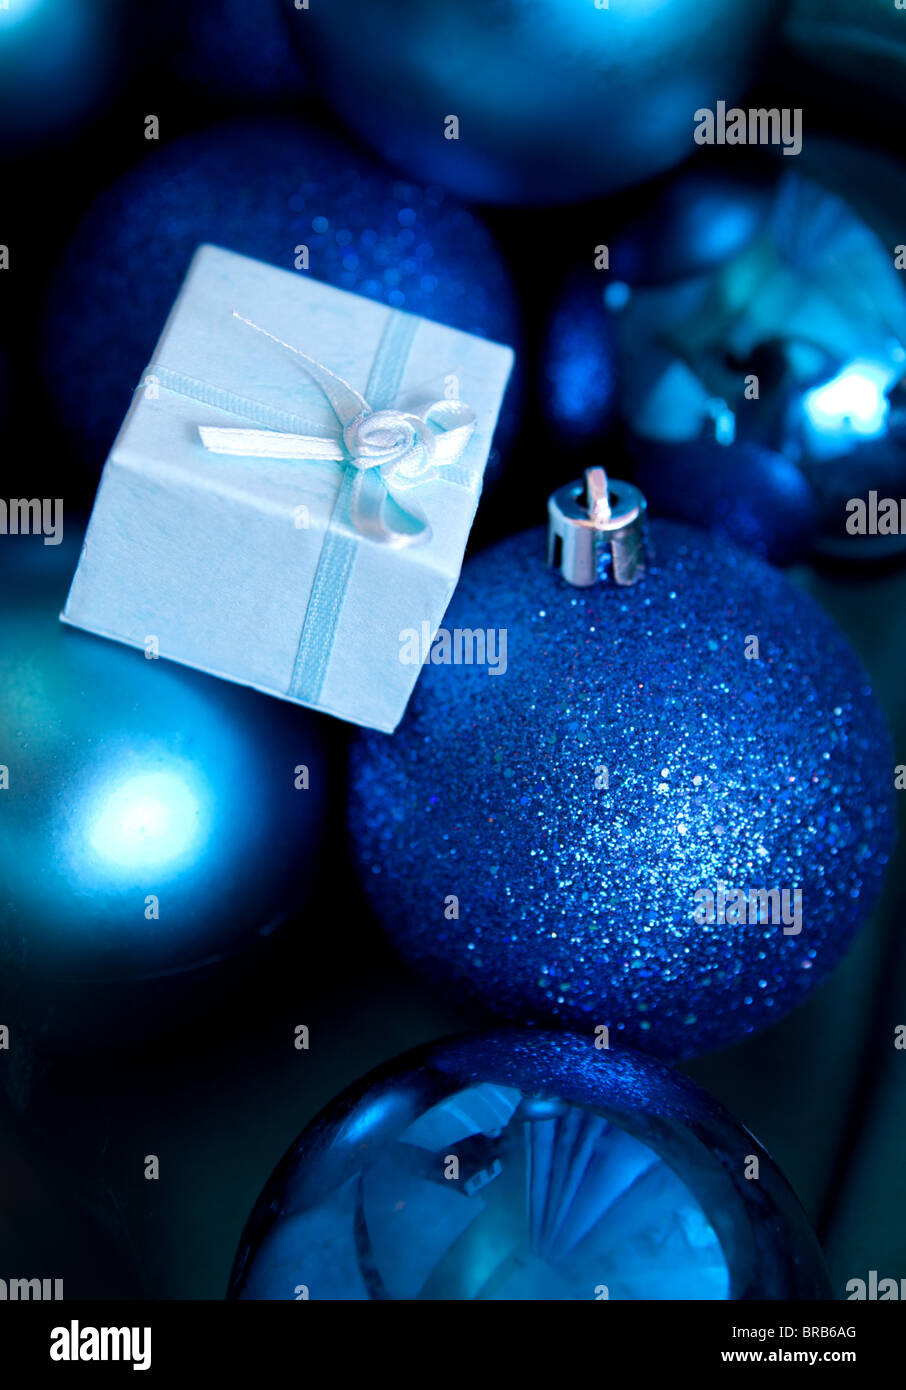 Weihnachtsschmuck in Blautönen Stockfoto